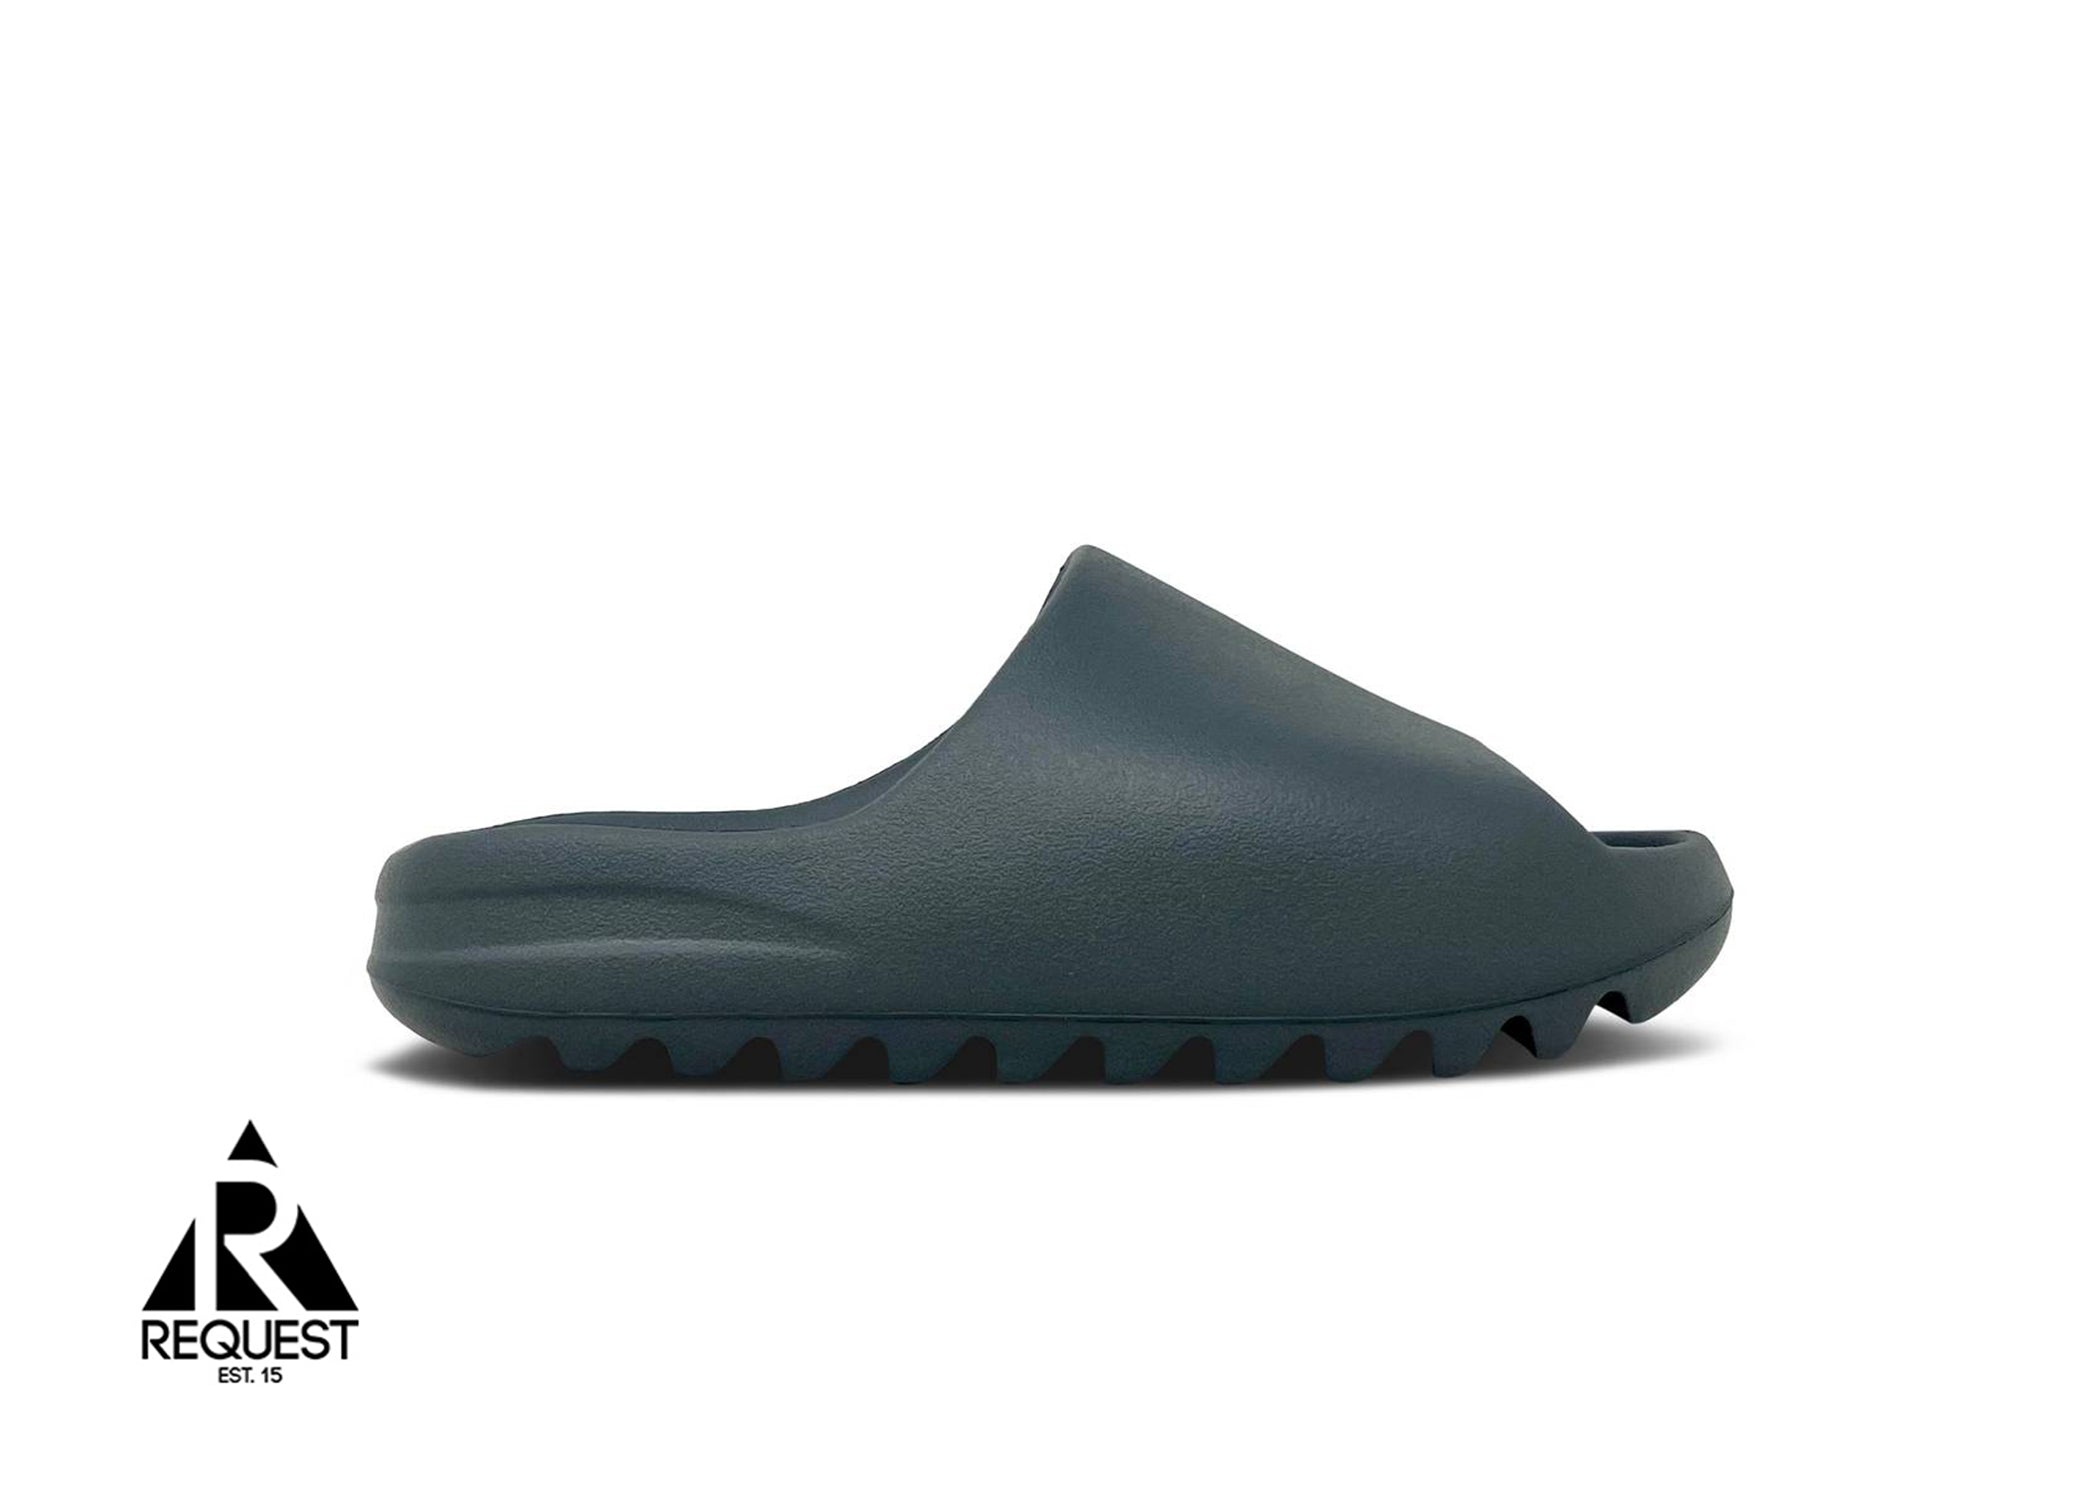 Adidas Yeezy Slide "Slate Grey”